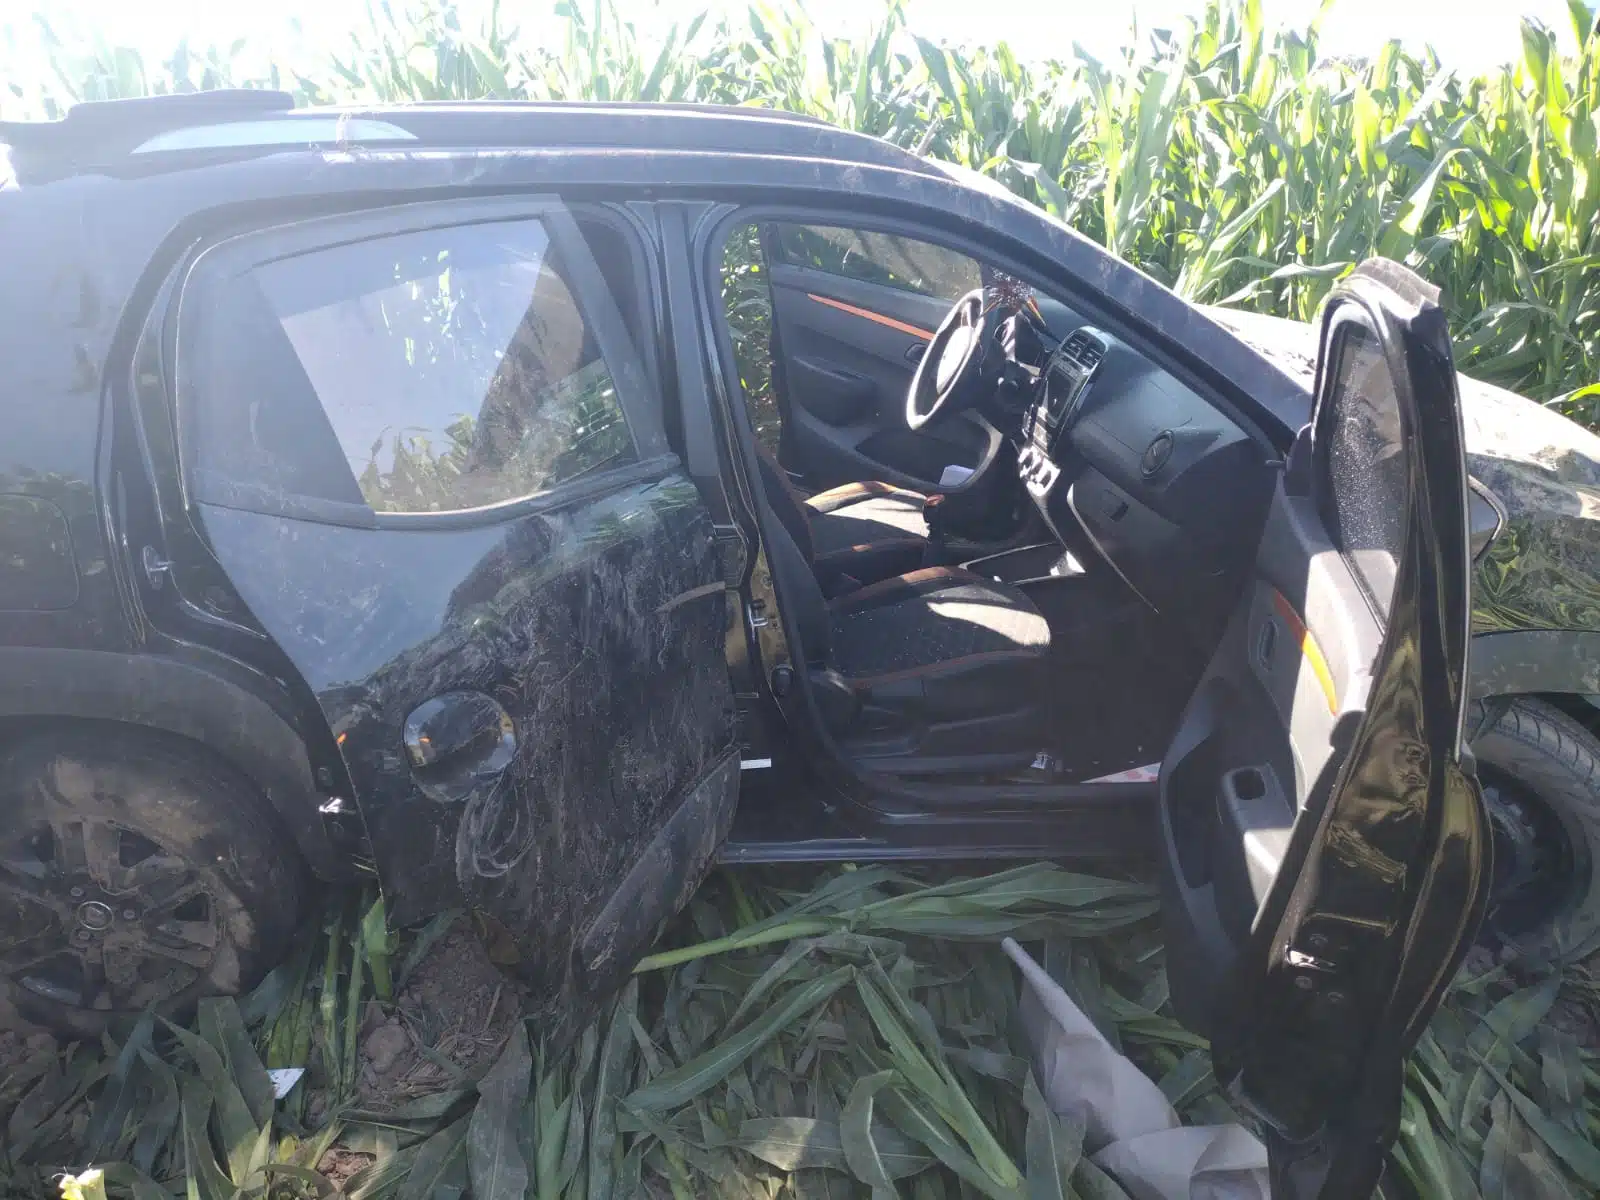 Auto negro accidentado en campo de maíz en Guasave